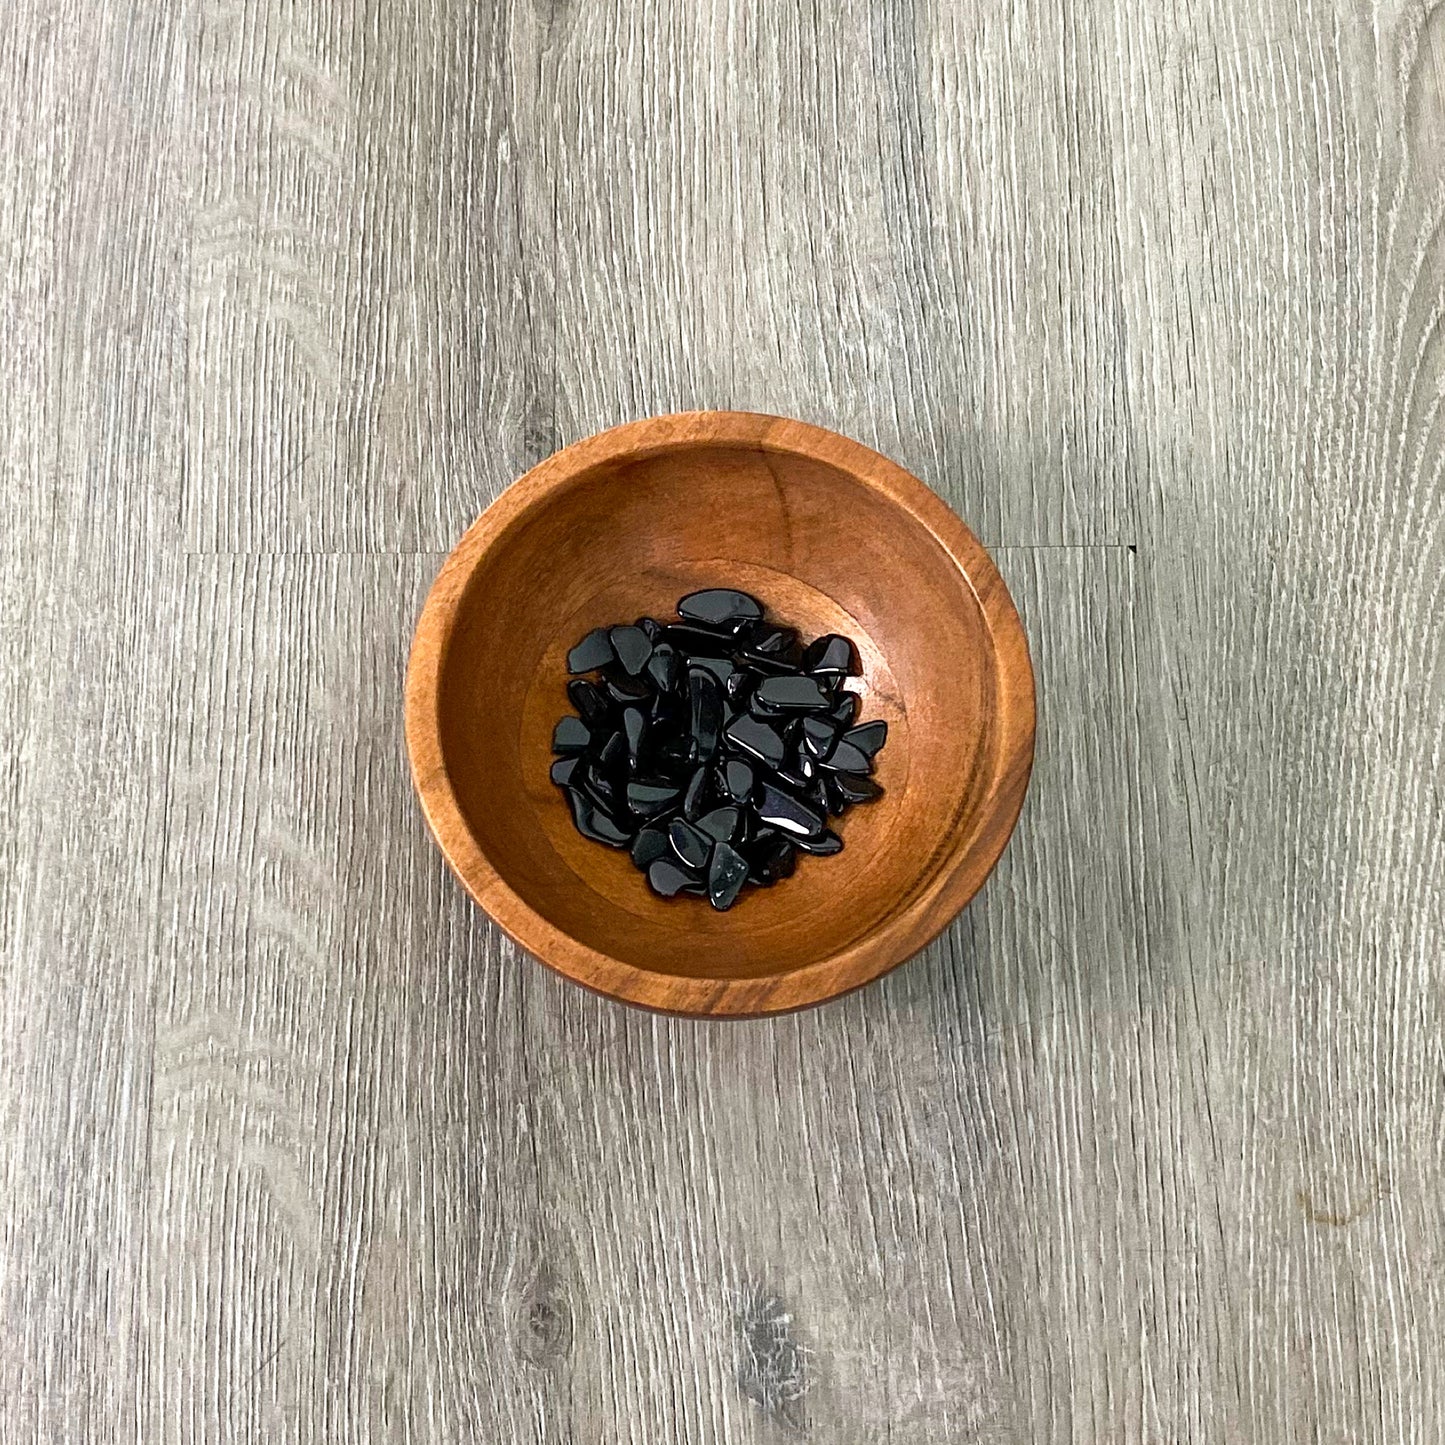 Black Obsidian Chips